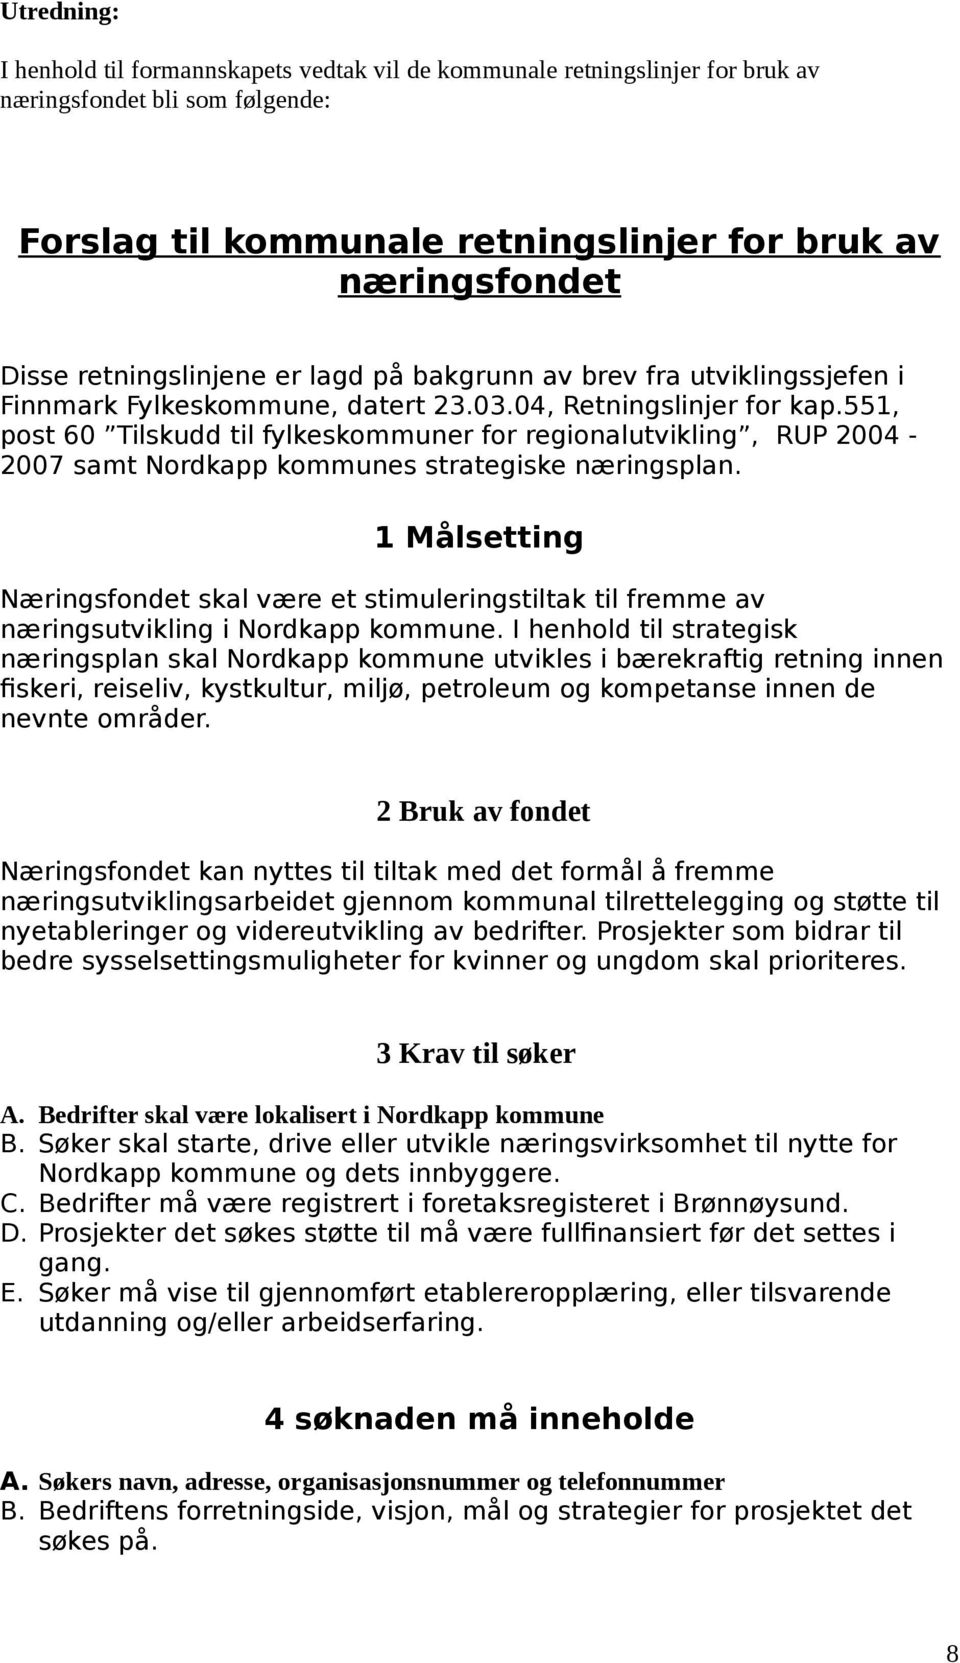 551, post 60 Tilskudd til fylkeskommuner for regionalutvikling, RUP 2004-2007 samt Nordkapp kommunes strategiske næringsplan.